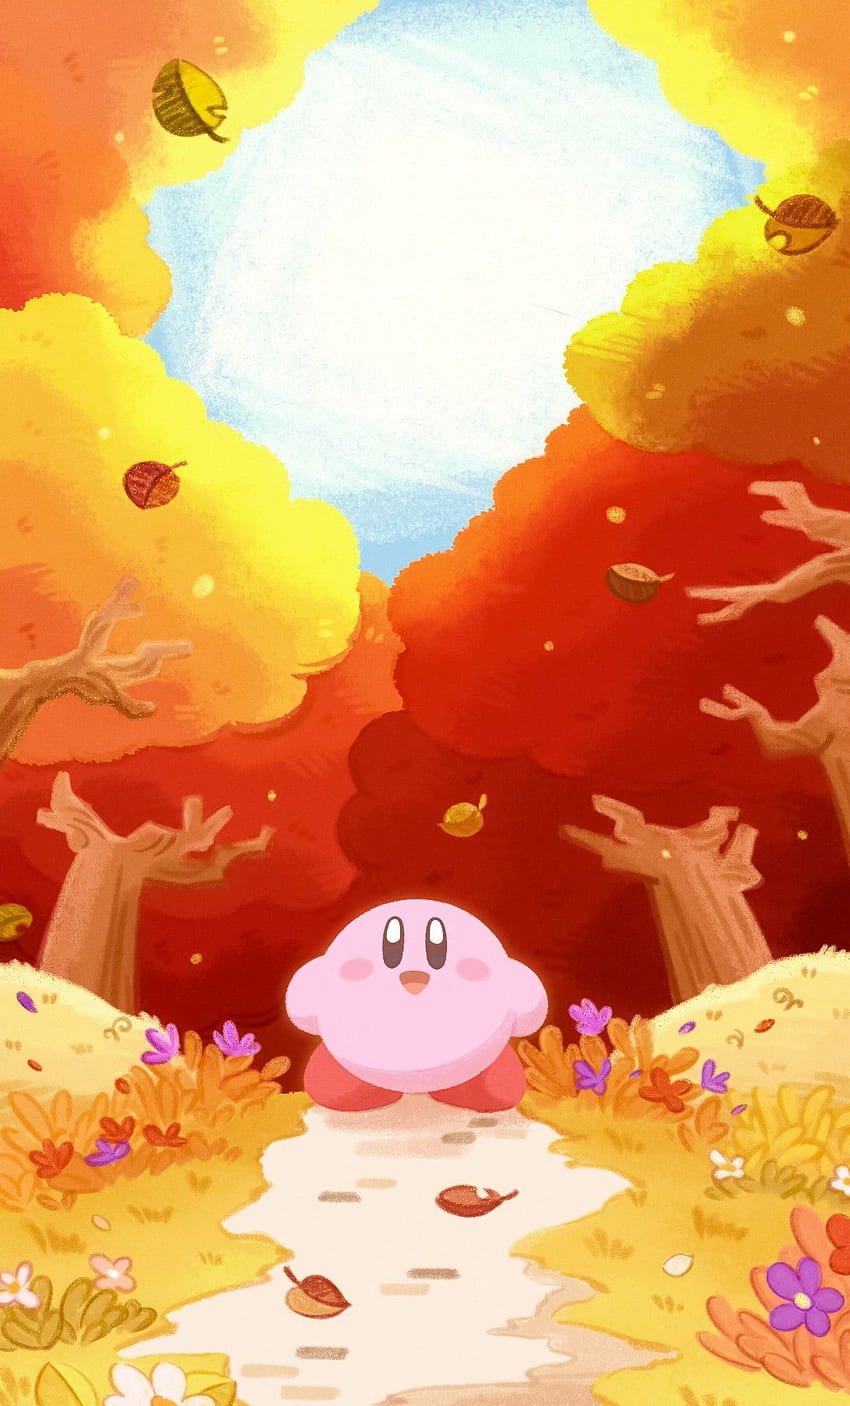 brenda en 2020. Kirby art, Kirby, Kawaii y Kirby Aesthetic fondo de pantalla del teléfono